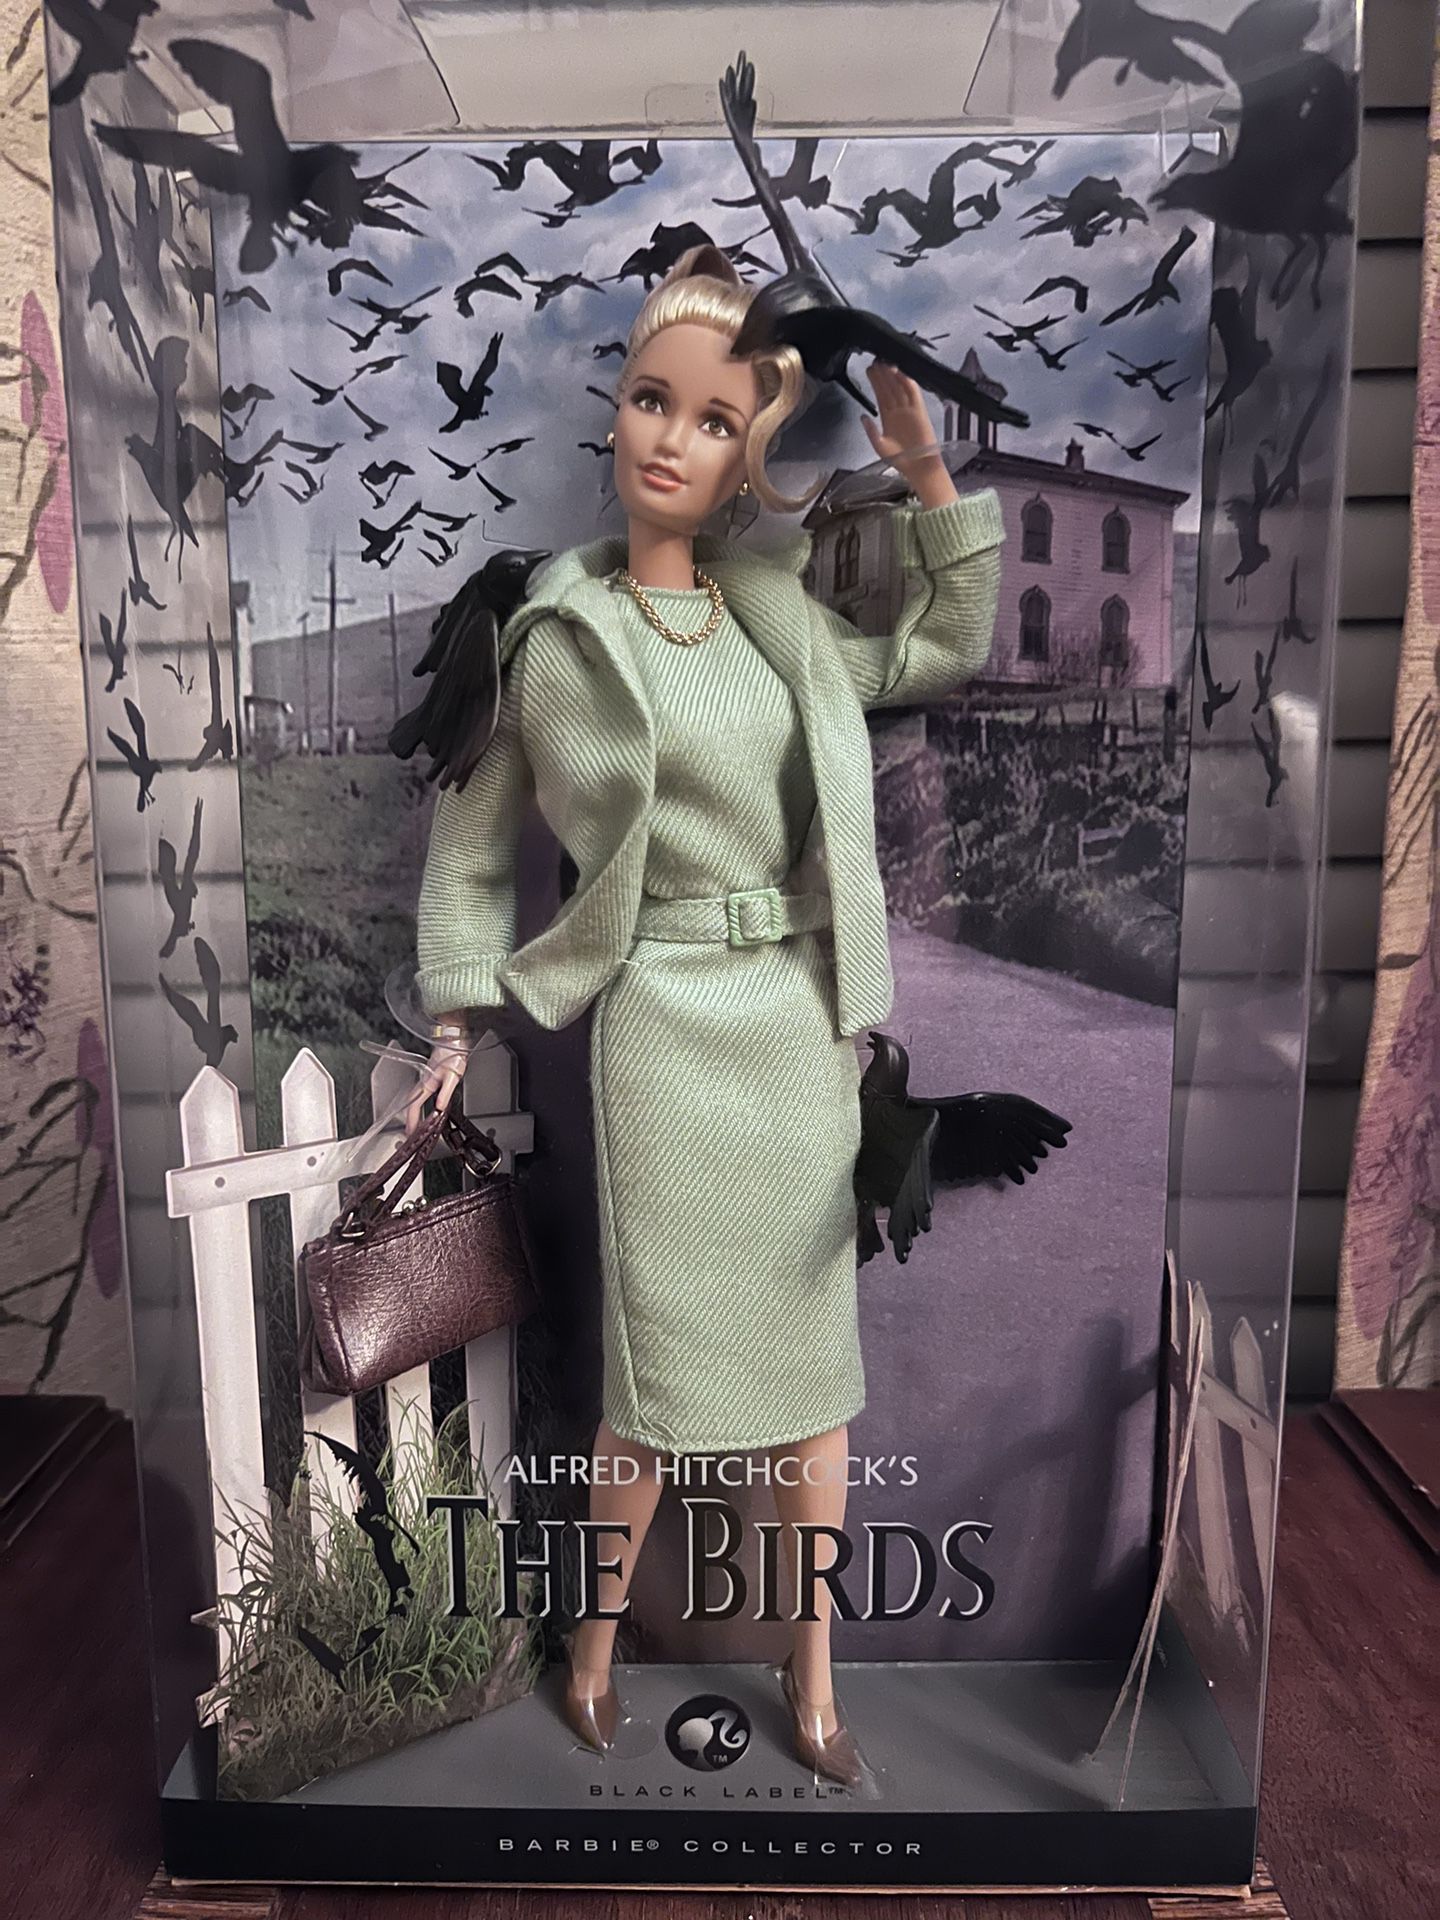 Tippi Hedren “The Birds” Hitchcock 2008 Black Label Barbie Doll - Sealed